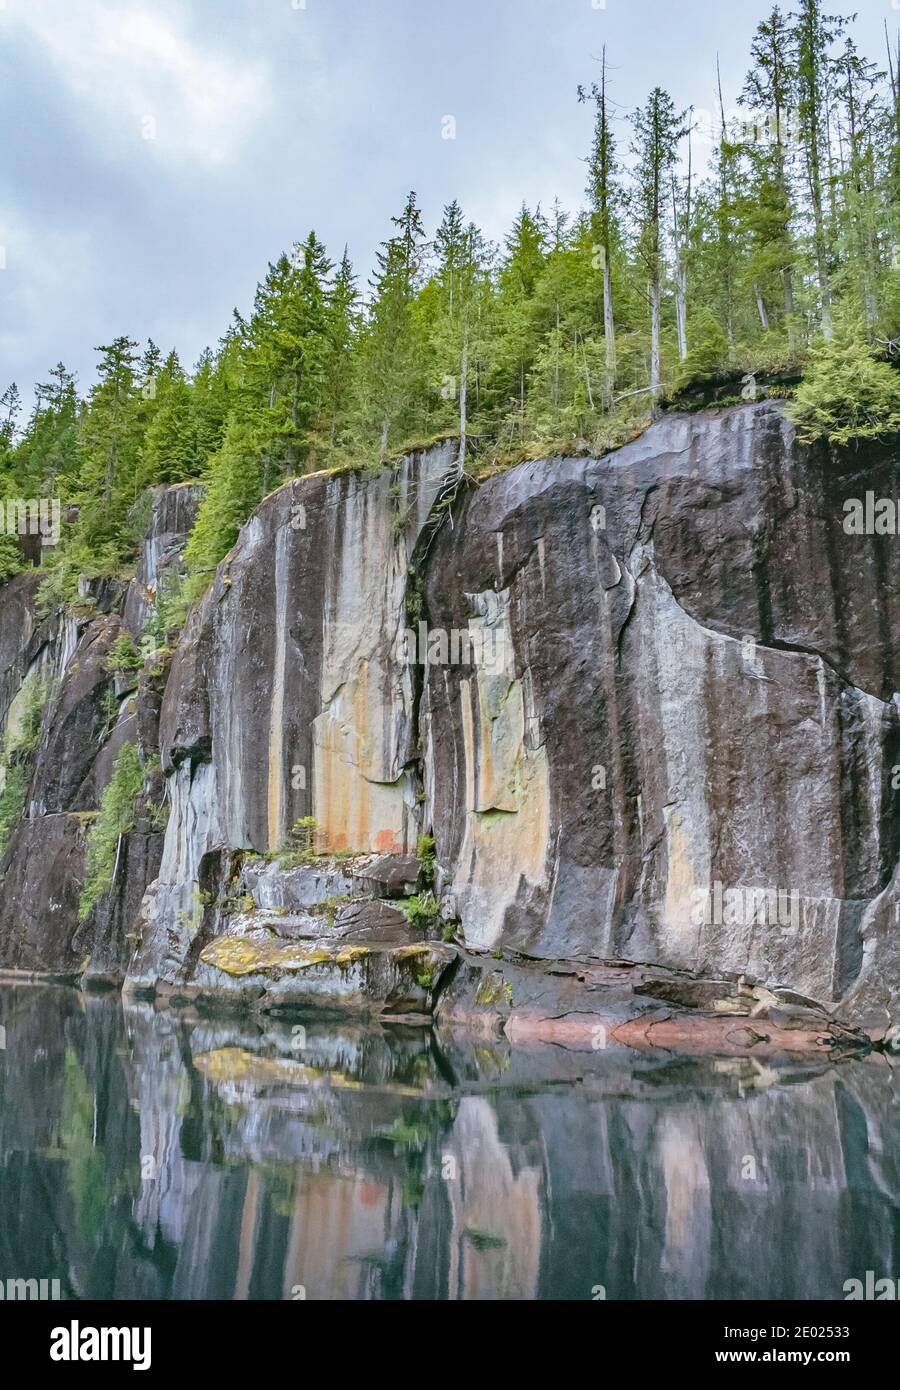 Gekrönt von dichtem Wald spiegeln sich steile senkrechte Klippen im stille Wasser darunter. Ein verblassenes Piktogramm ist sichtbar (Alison Sound, British Columbia). Stockfoto